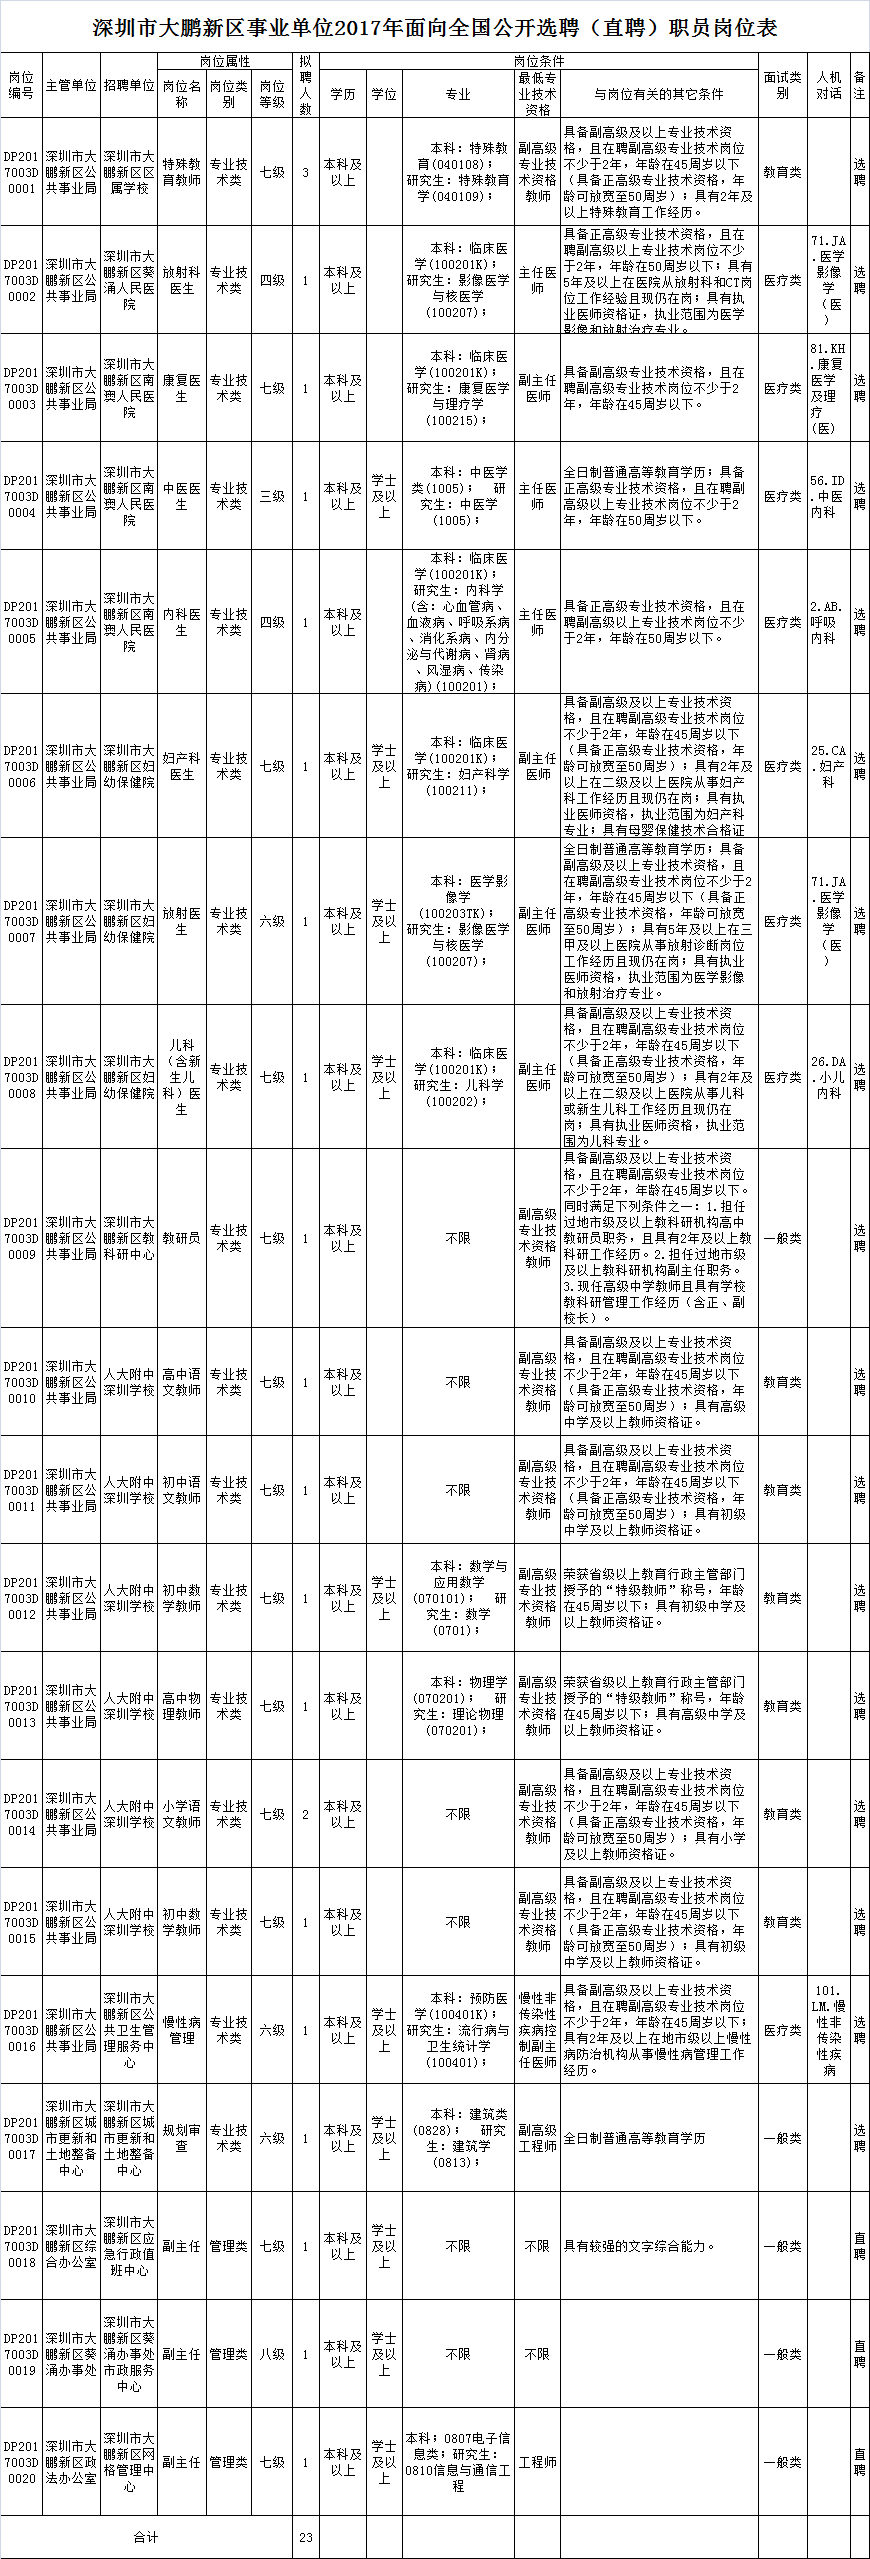 深圳市大鹏新区事业单位面向全国公开选聘 (直聘)职员岗位表.png